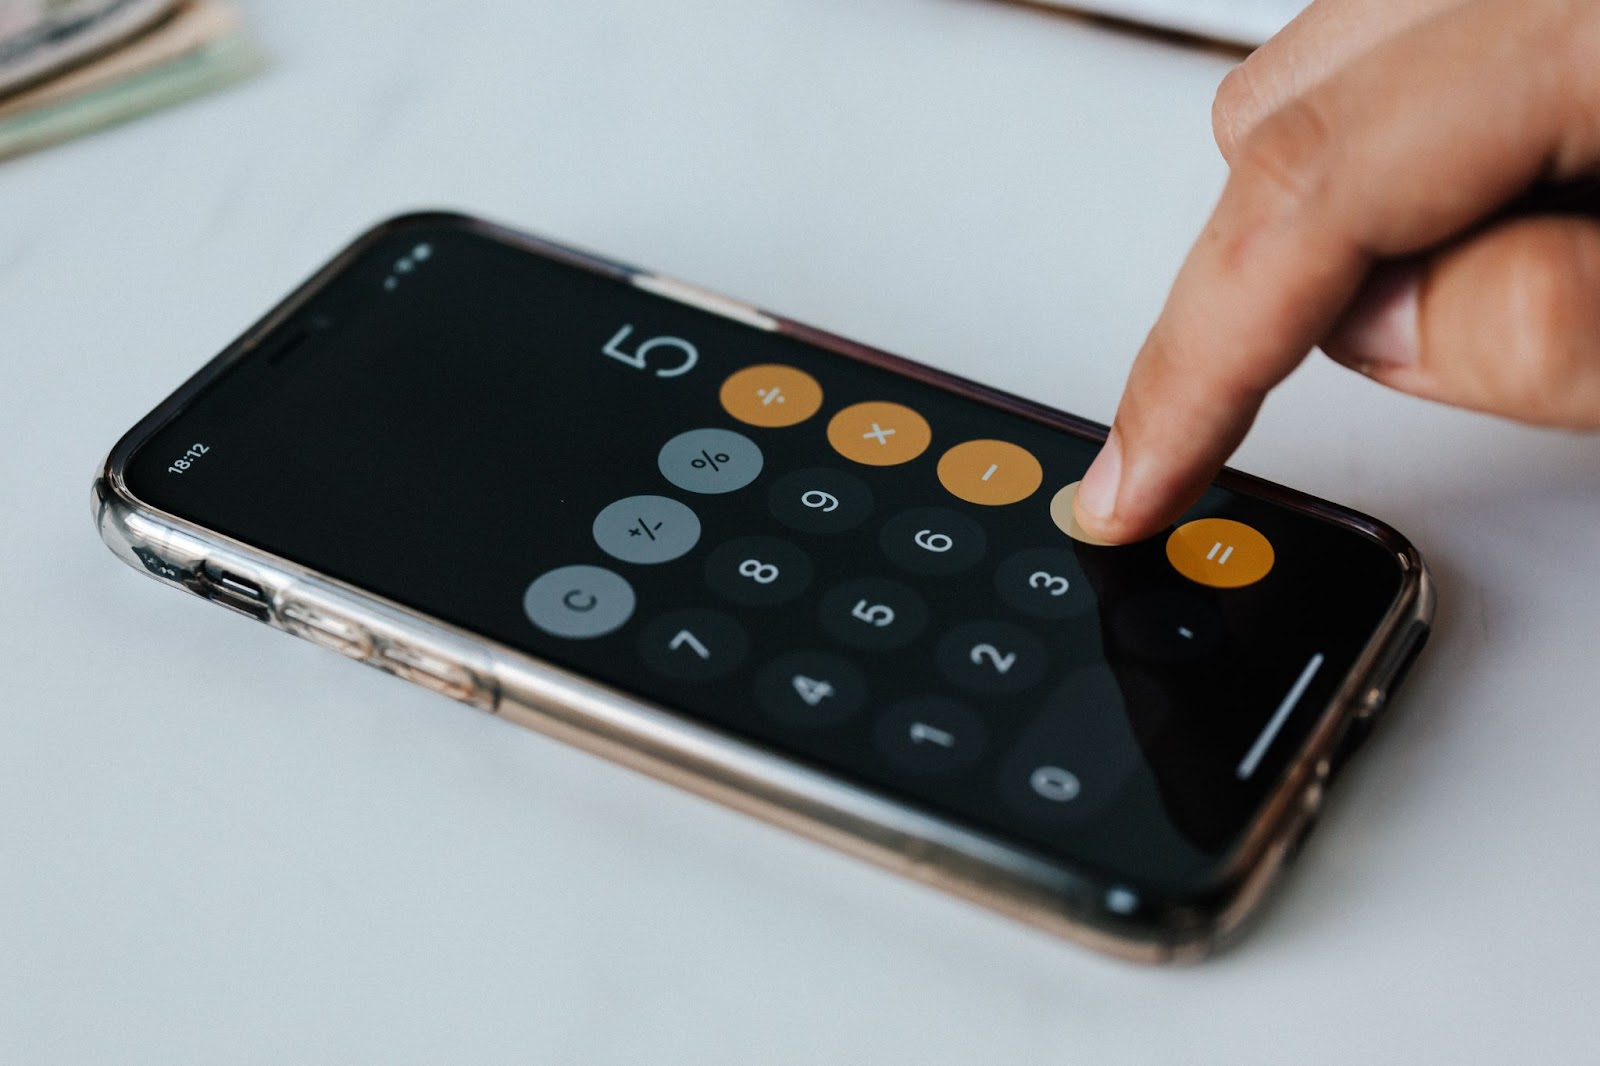 Na imagem, a mão direita de uma pessoa branca está digitando sobre um celular que mostra uma calculadora digital, com o número 5 sendo mostrado no visor. O celular está disposto sobre uma superfície clara, como uma mesa.